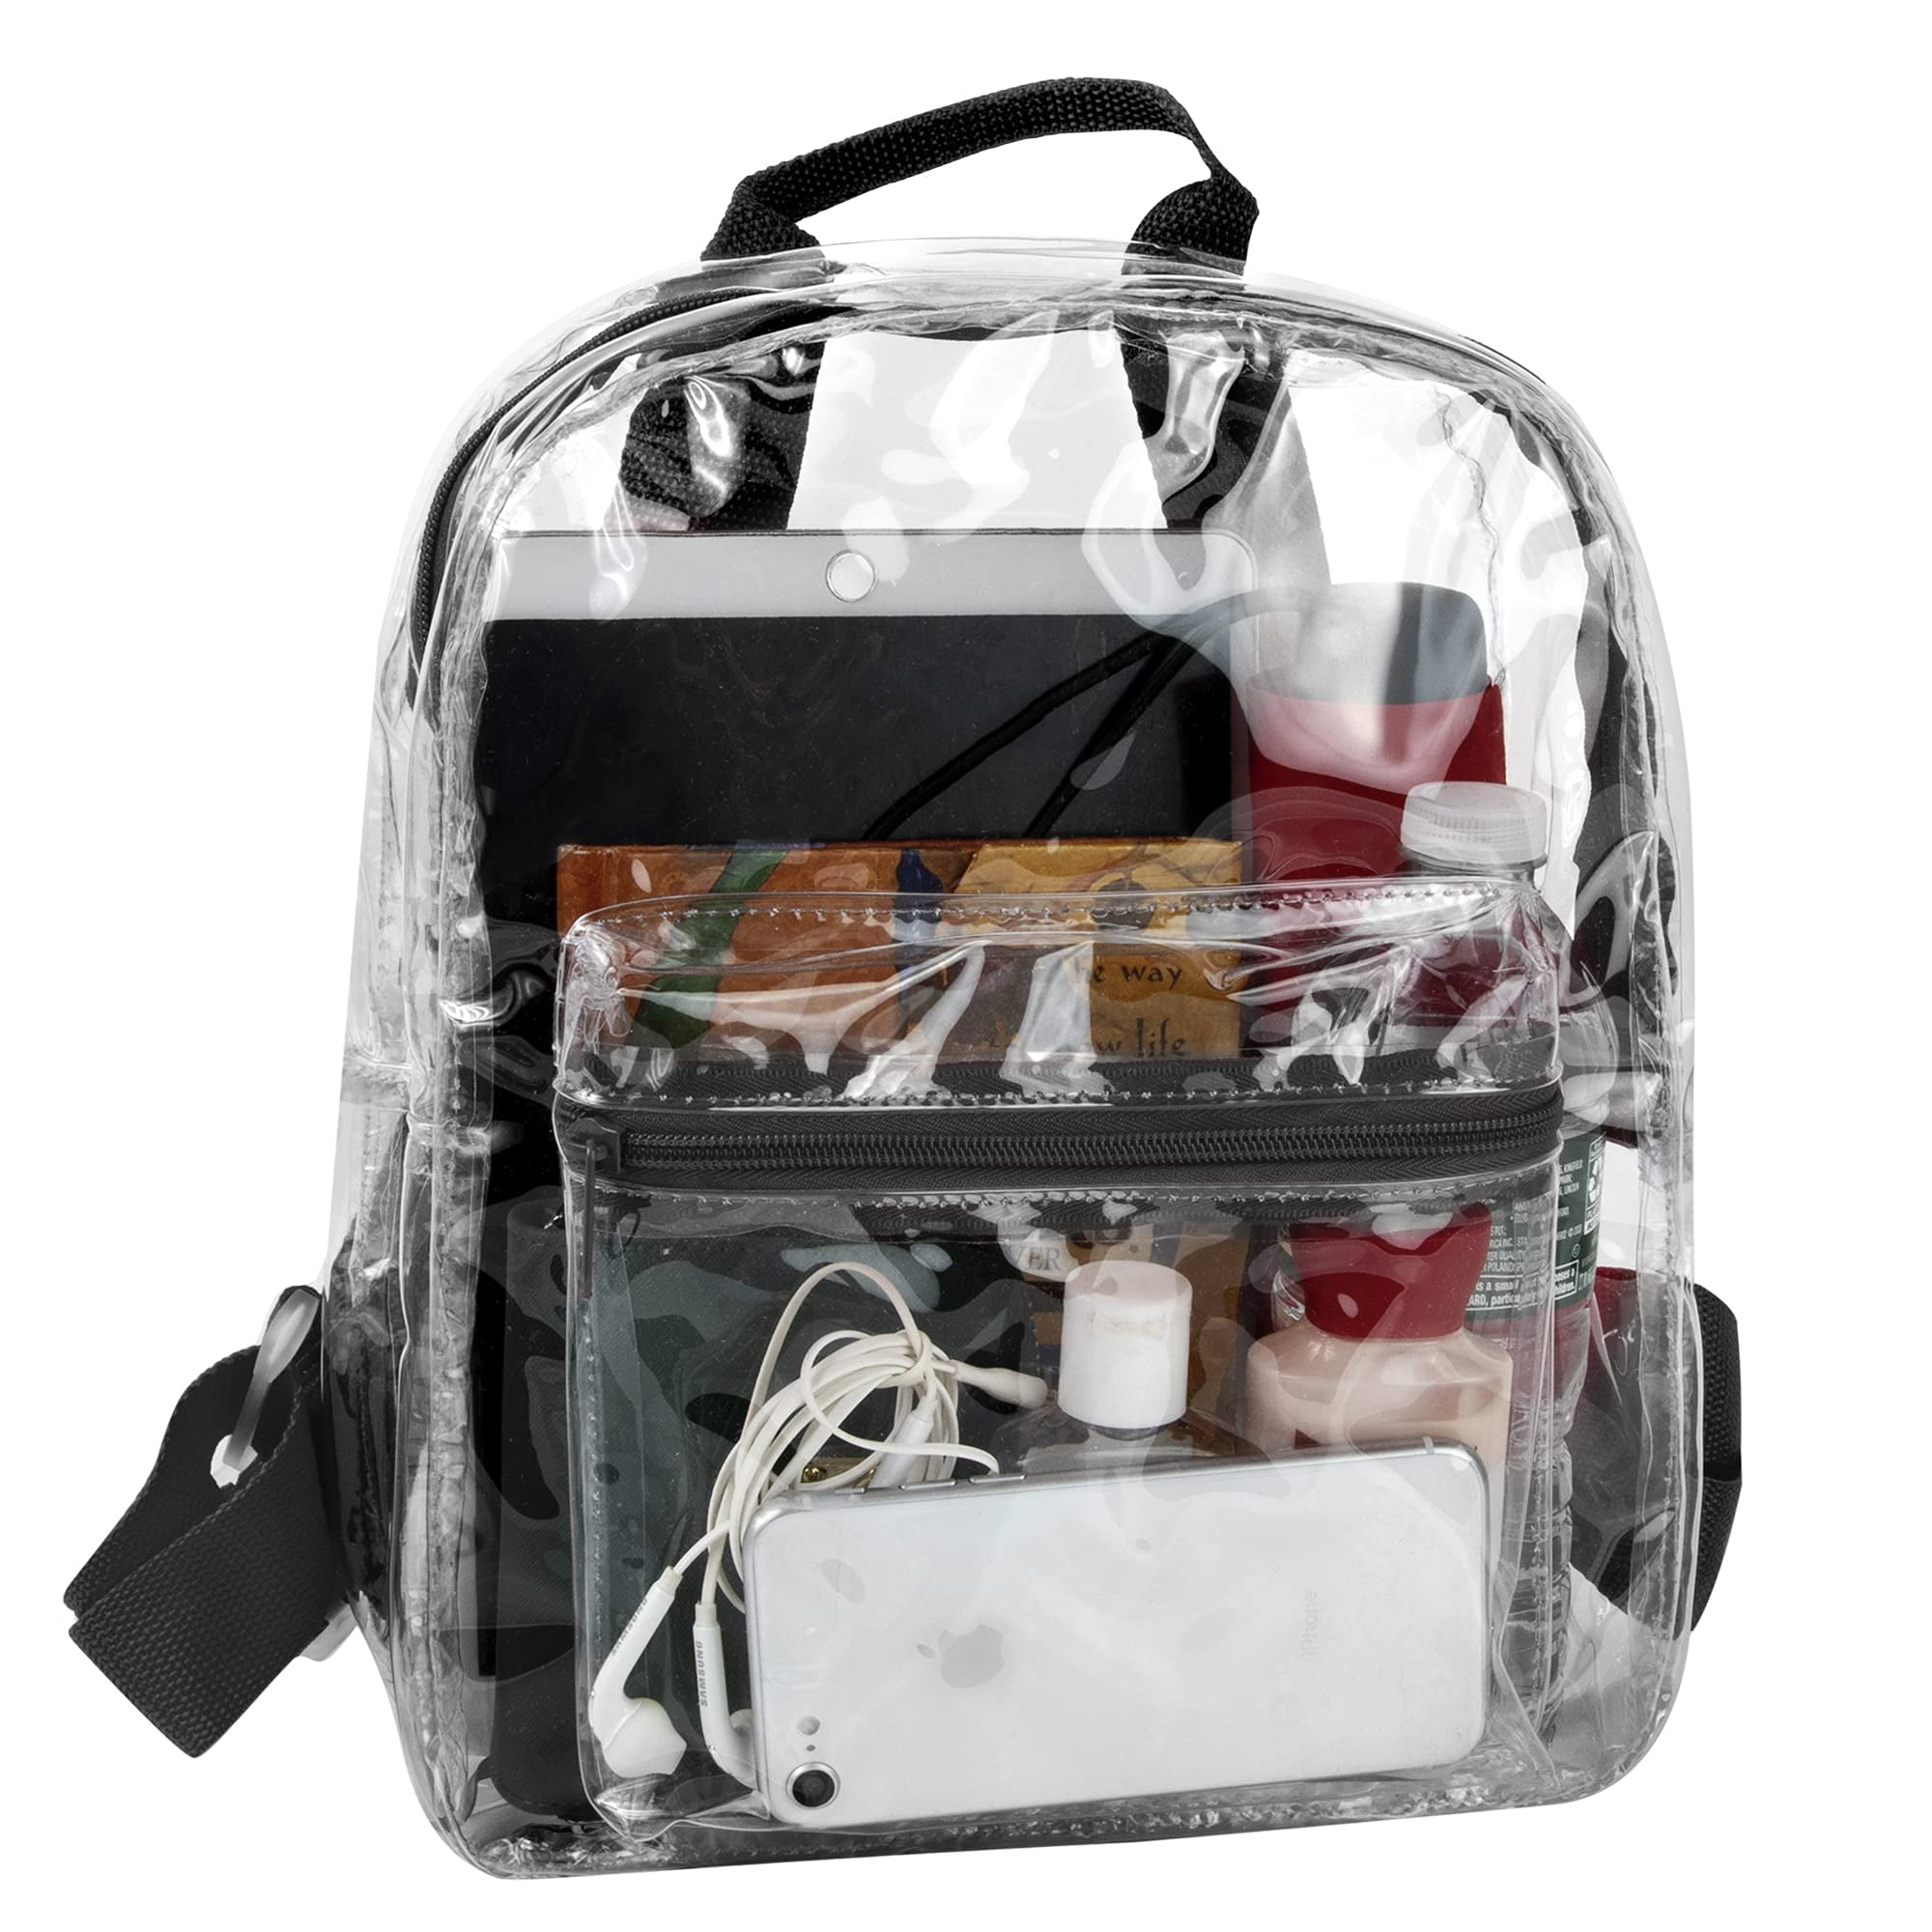 MADISON & DAKOTA Unisex Clear Mini Backpacks for Beach, Travel